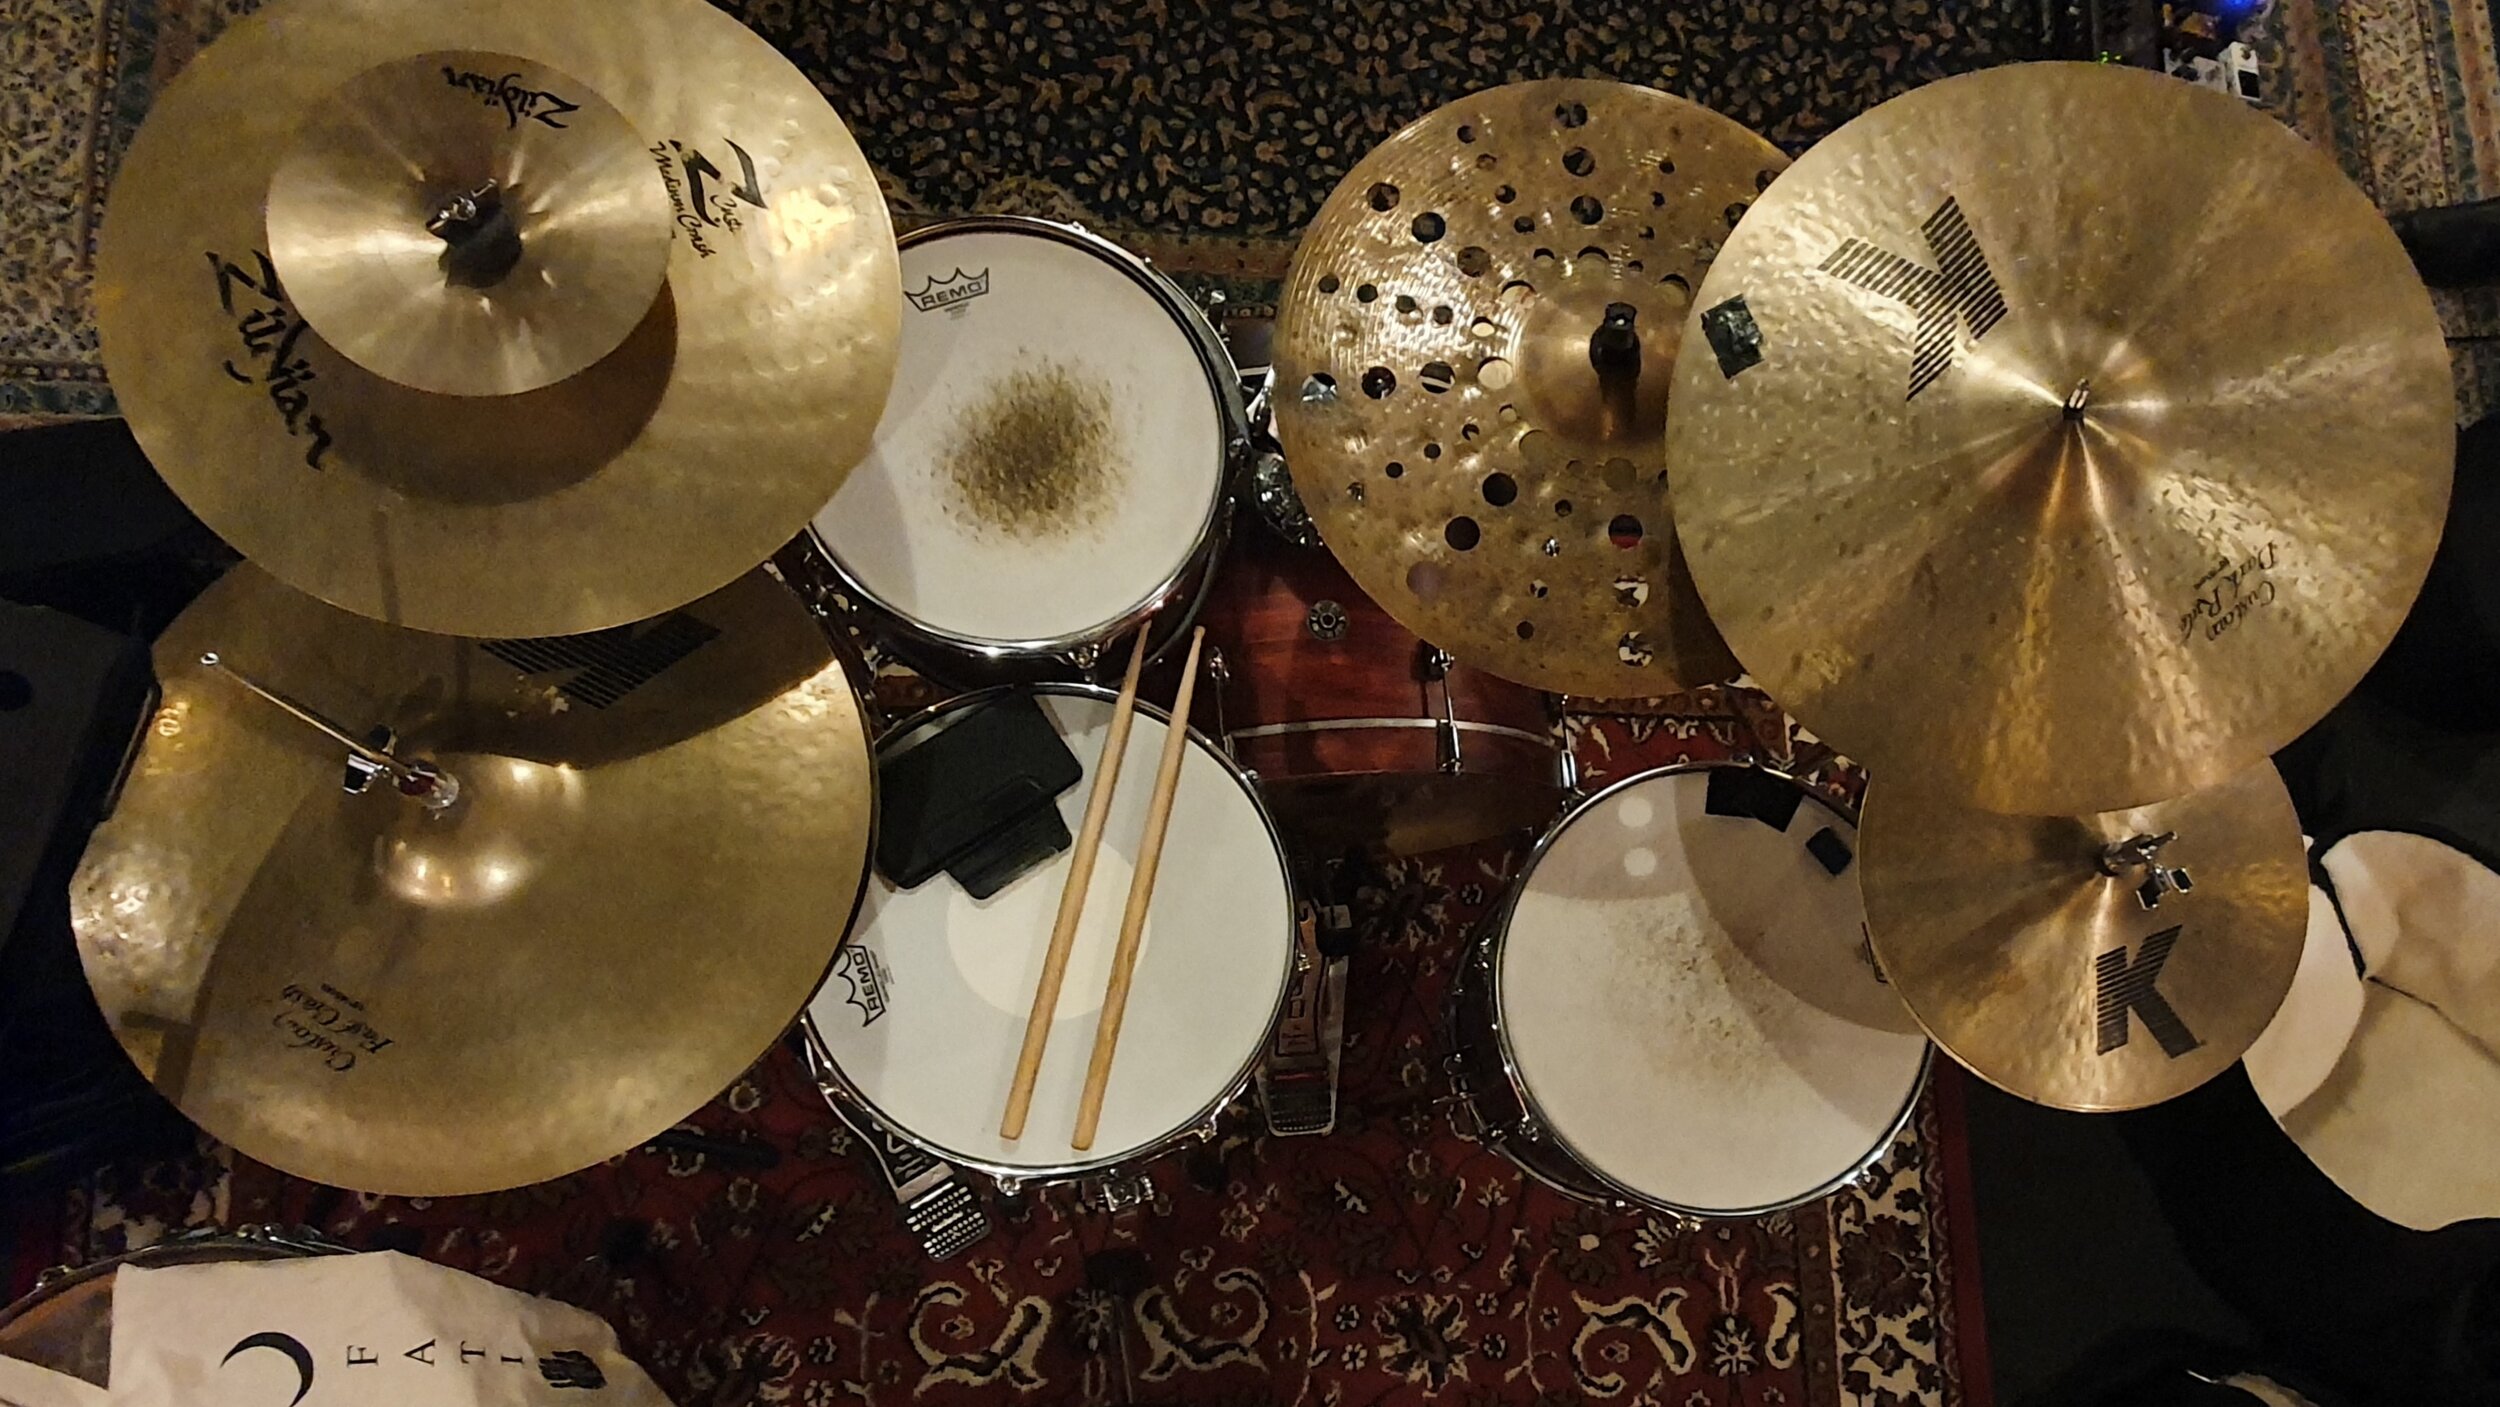 Drum Kit Pic 02 (Zoomed) - Cypress Bartlett.jpg